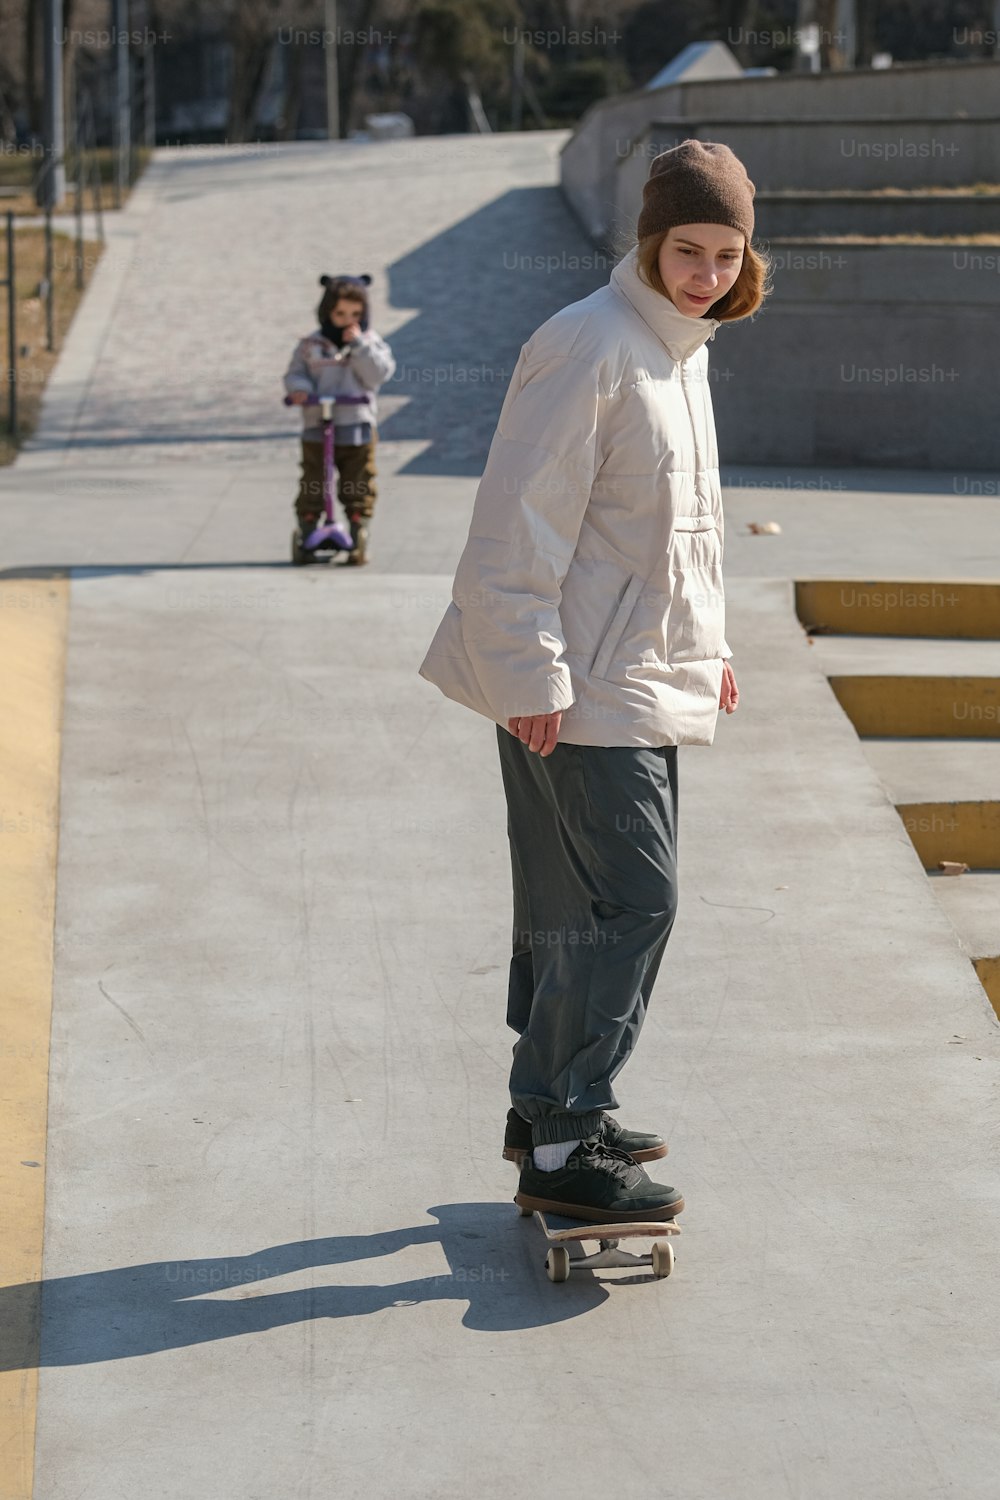 歩道をスケートボードに乗っている若い男